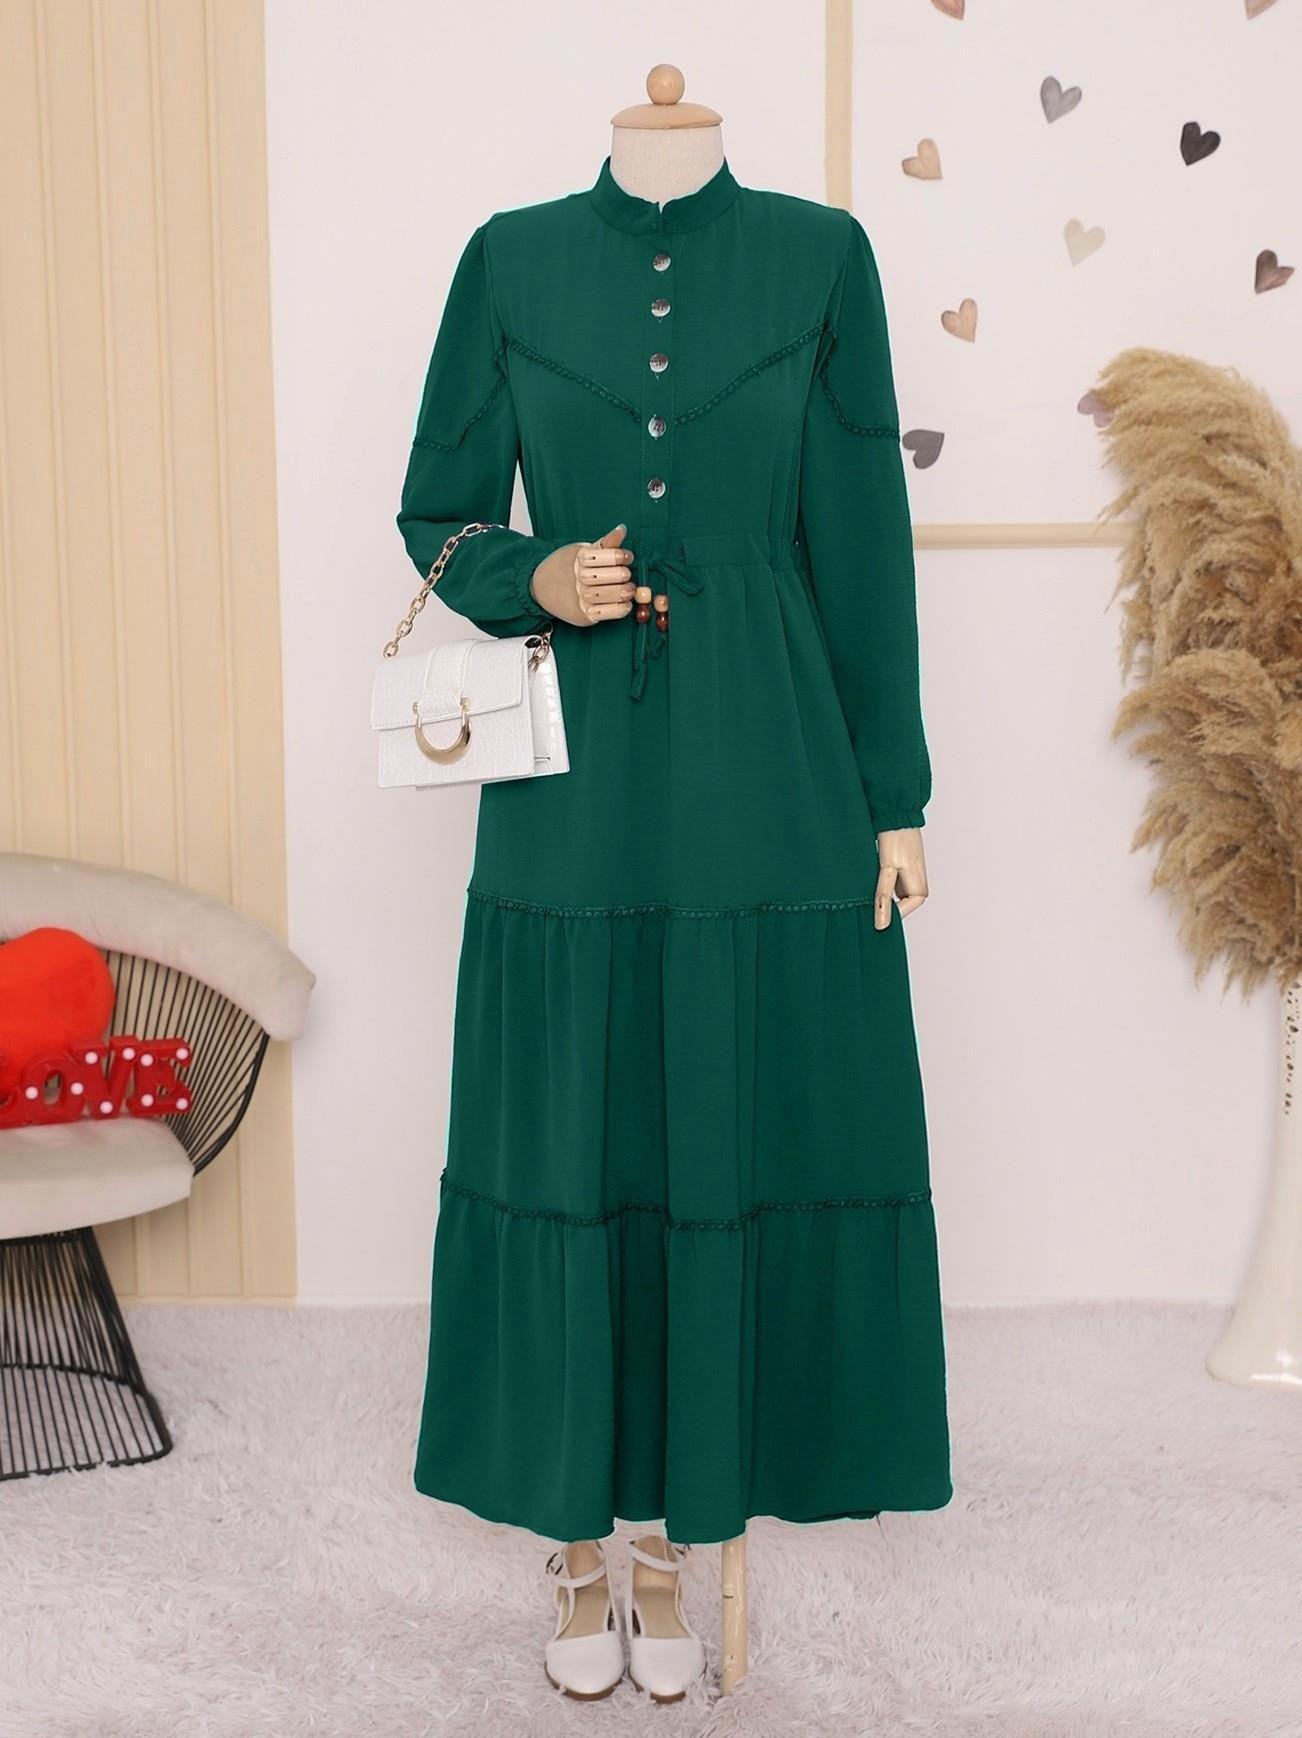 modest dresses for women in spain